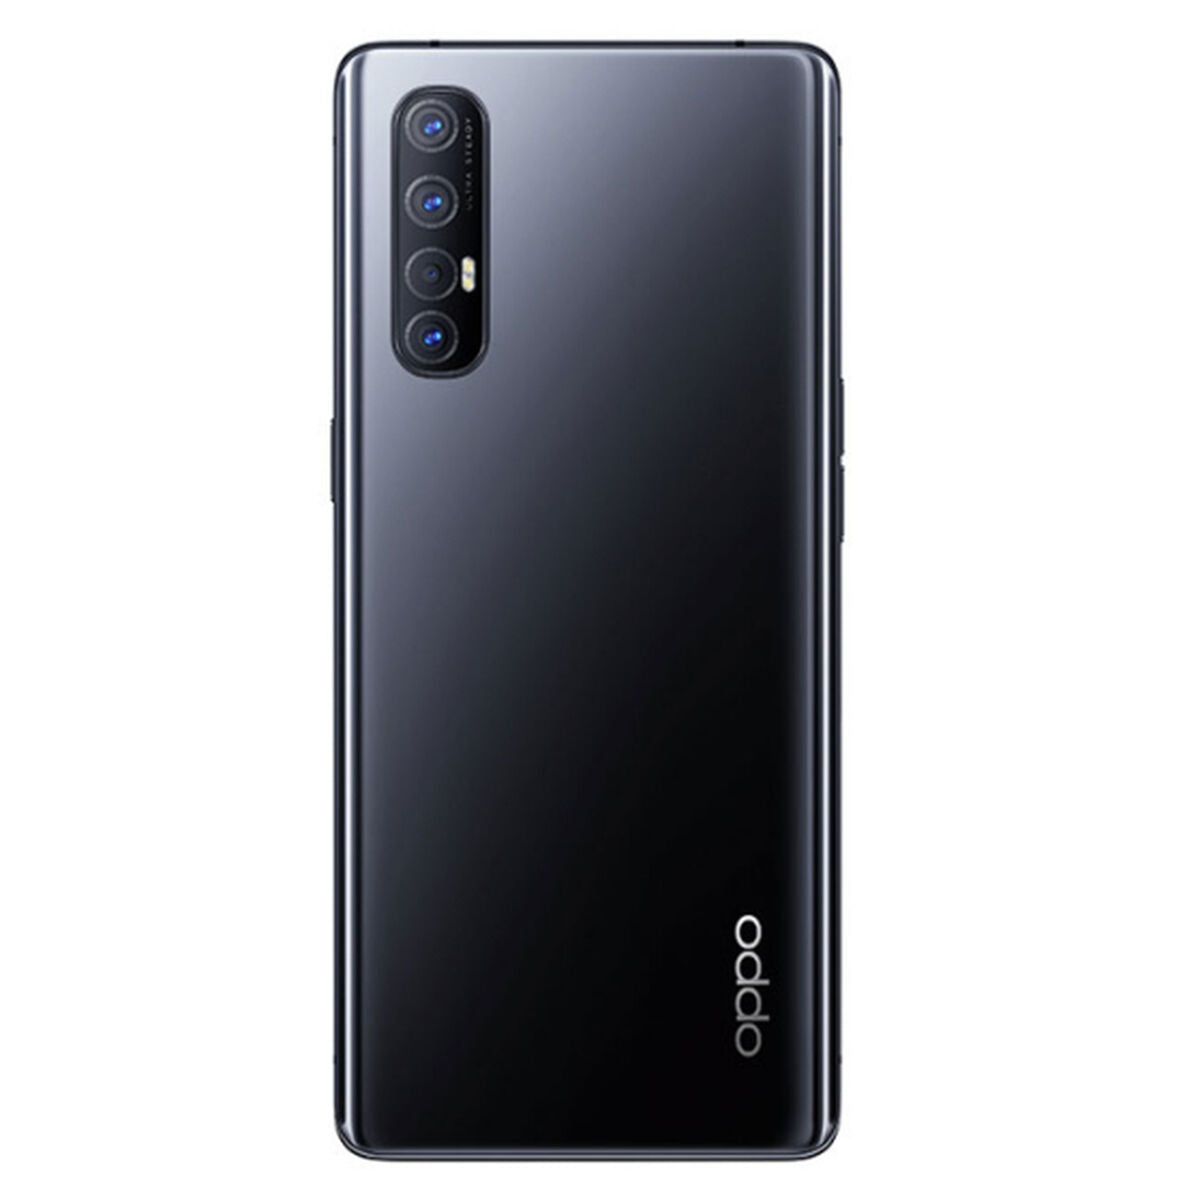 Smartphone Oppo Find X2 Neo 6,5" 12 GB RAM 256 GB Noir